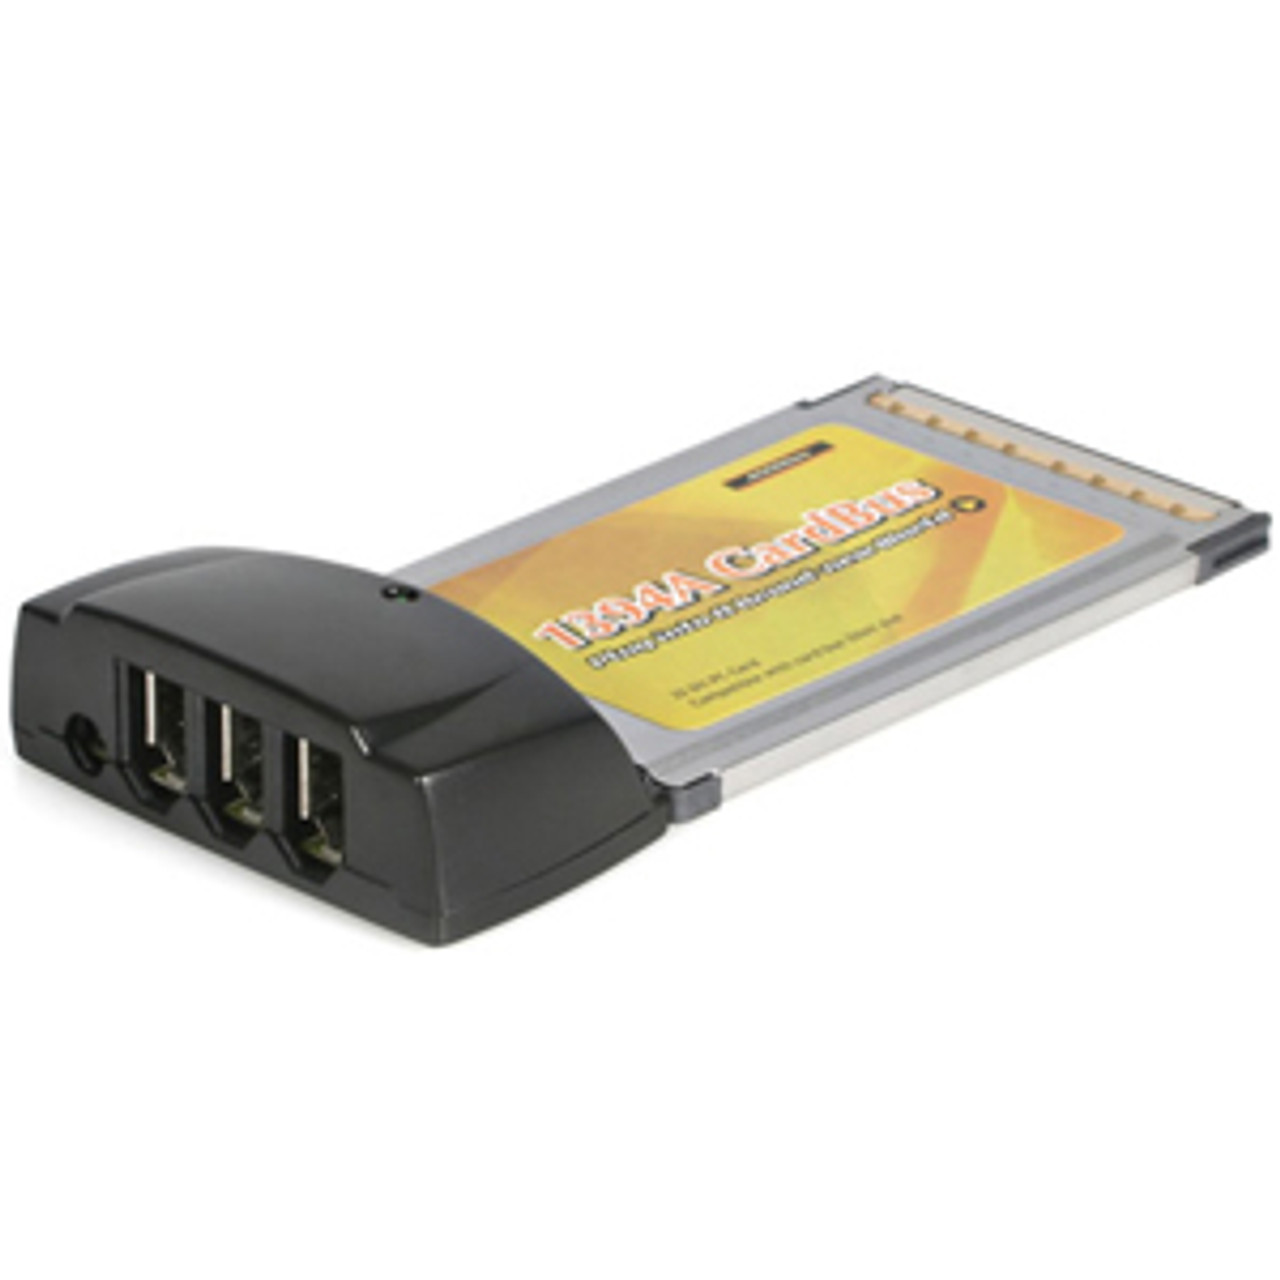 CB1394 StarTech 3-Port CardBus IEEE 1394a FireWire Adapter Card